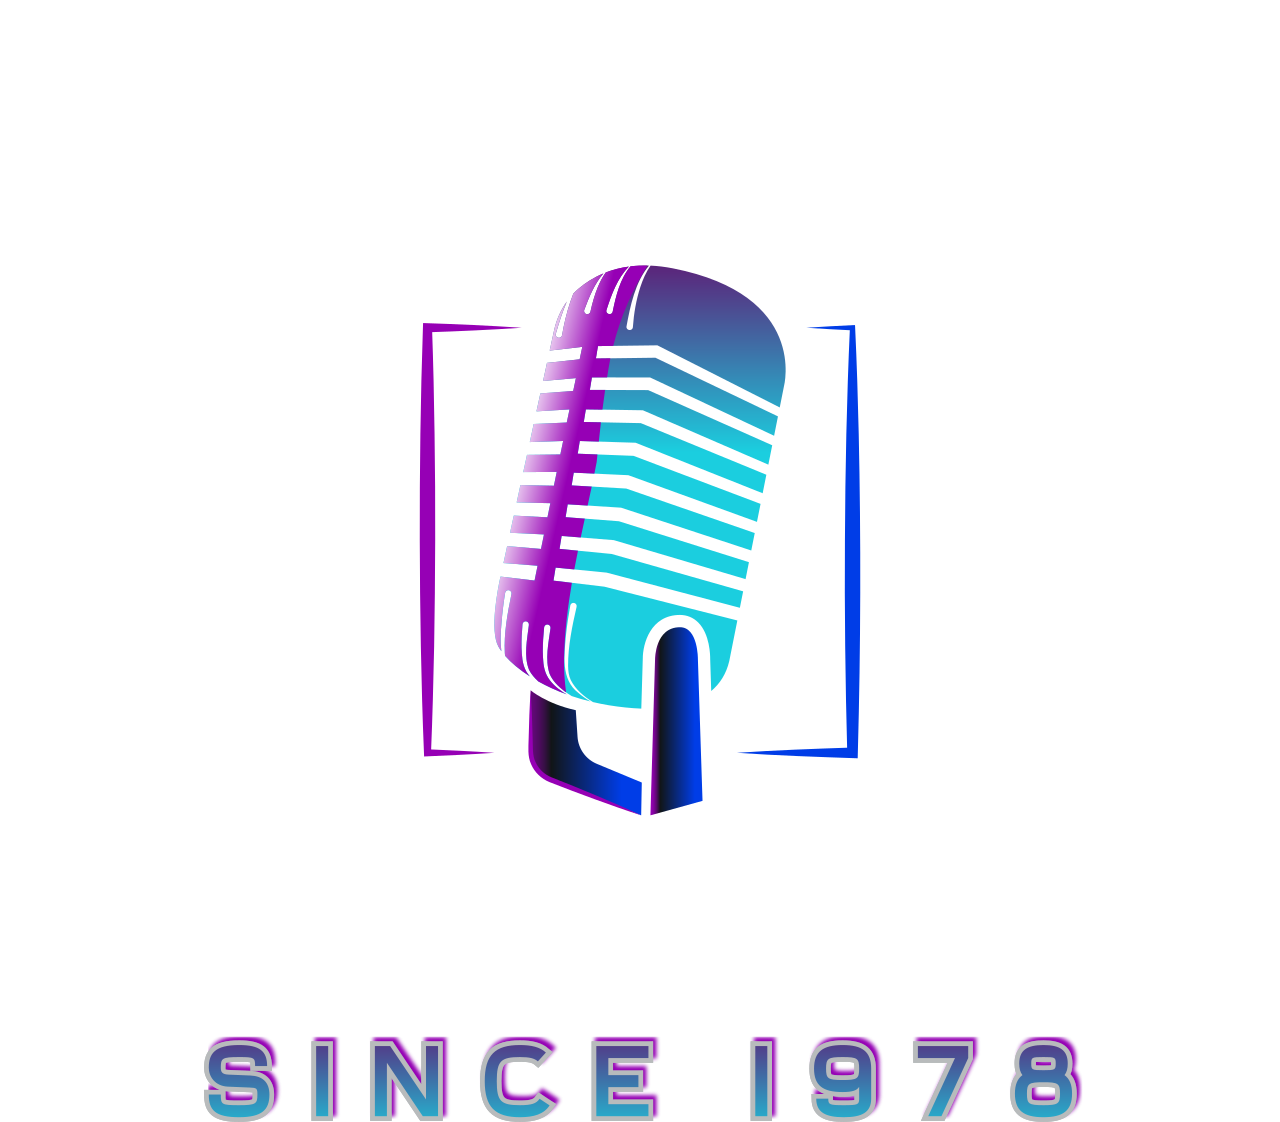 American Top Gospel's logo